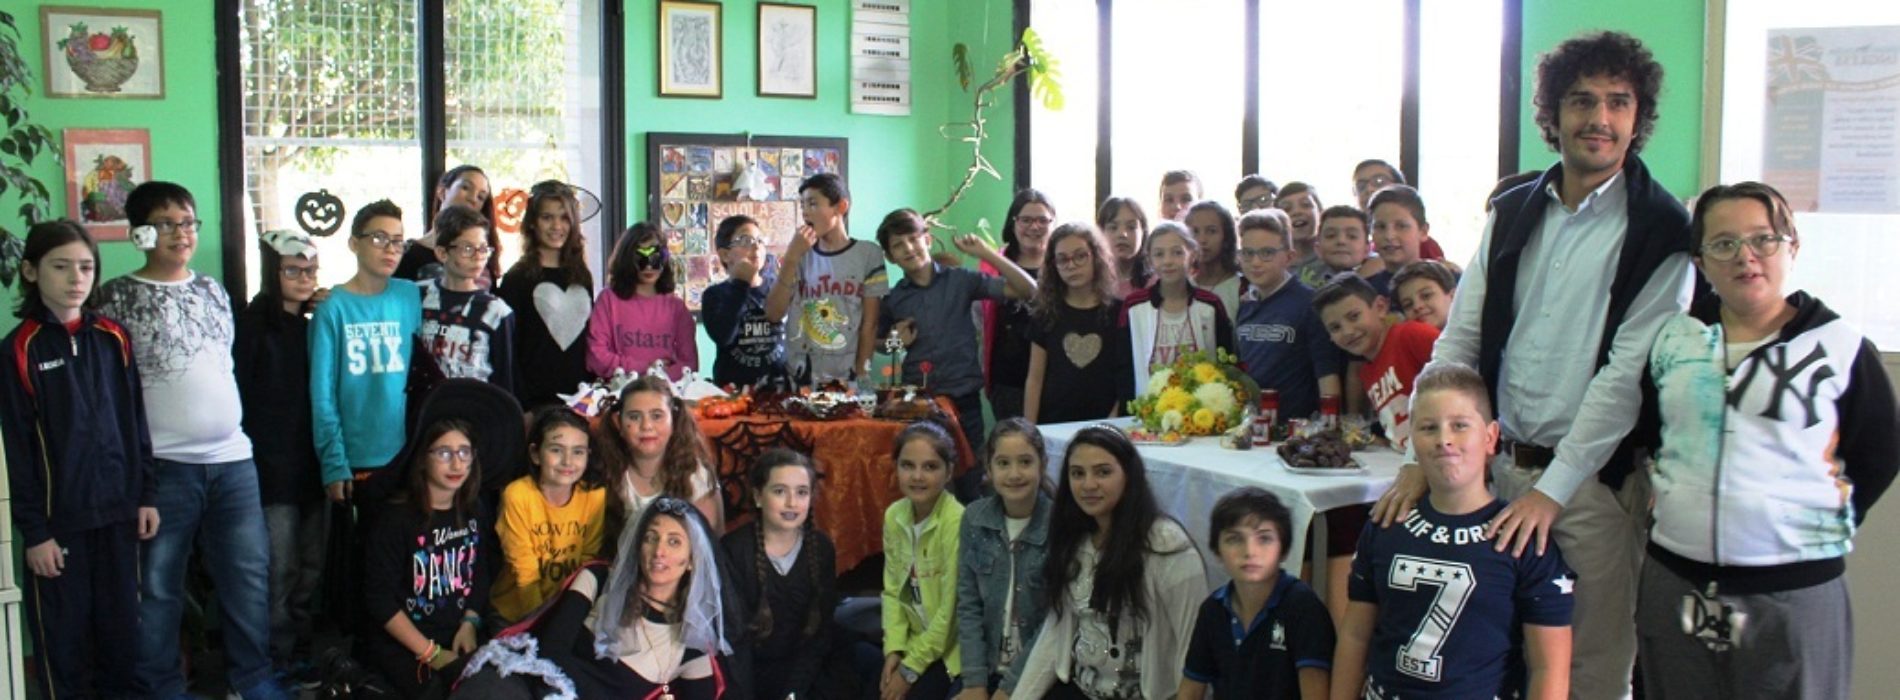 La scuola media “Don Milani” ripropone l’evento LA DOLCEZZA DELLA SOLIDARIETÀ